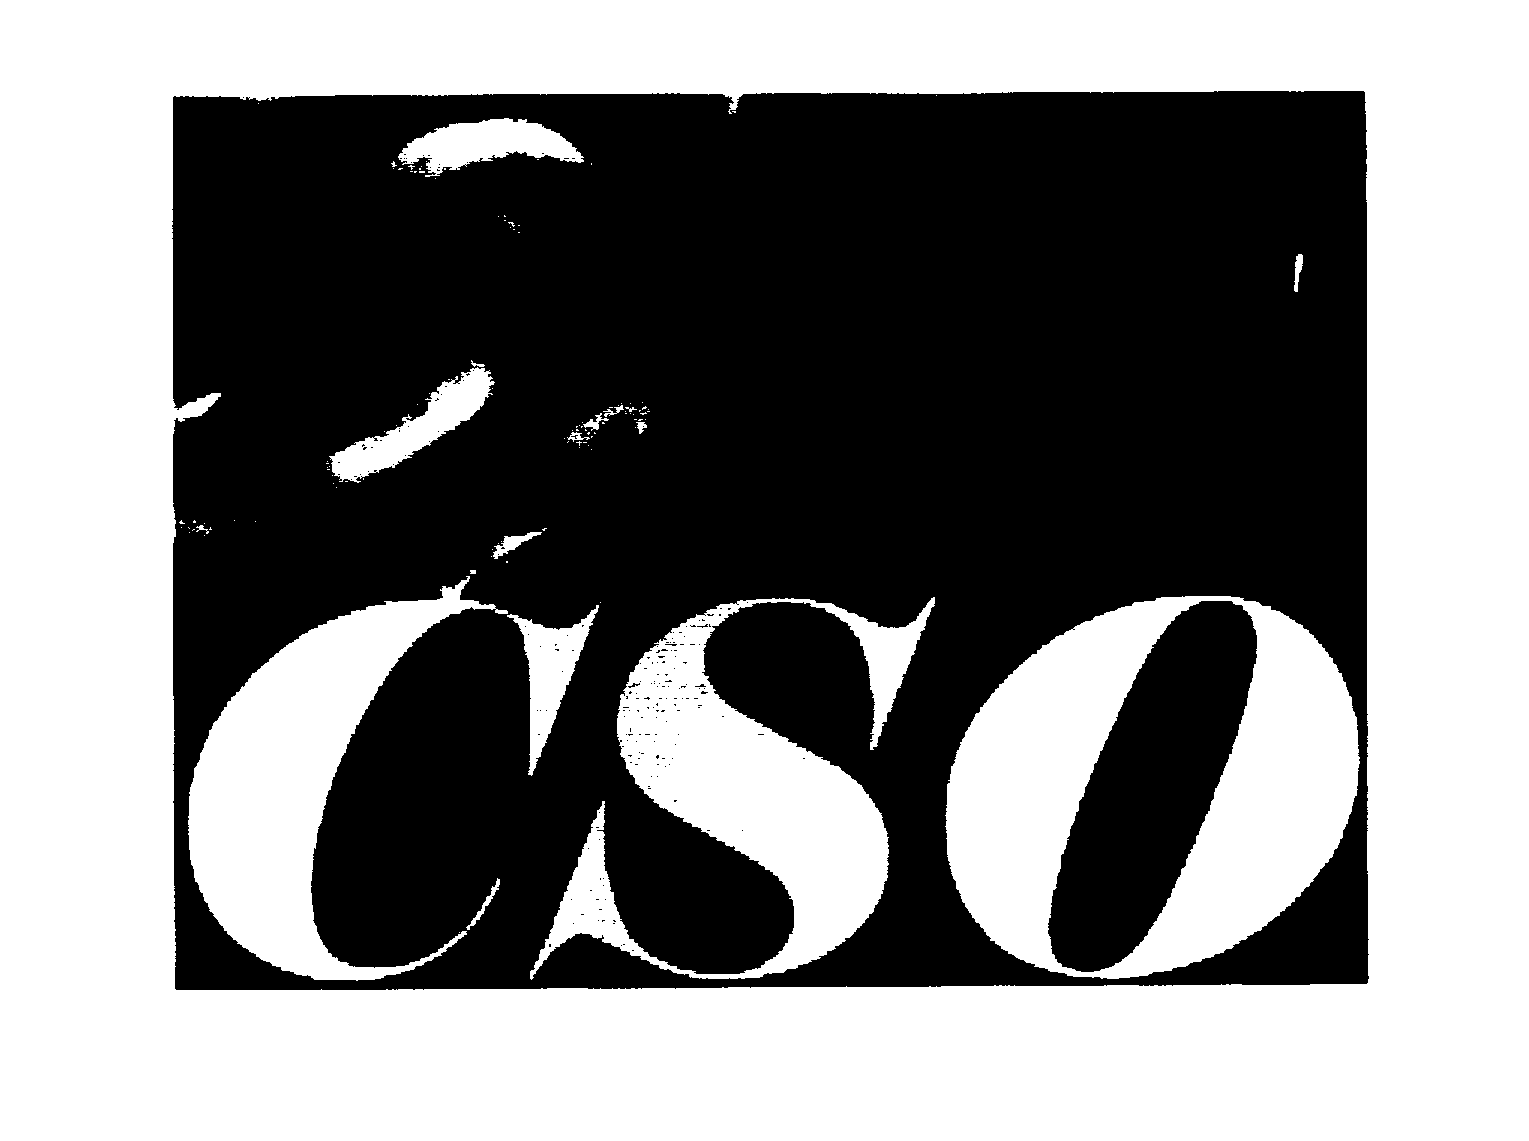 Trademark Logo CSO